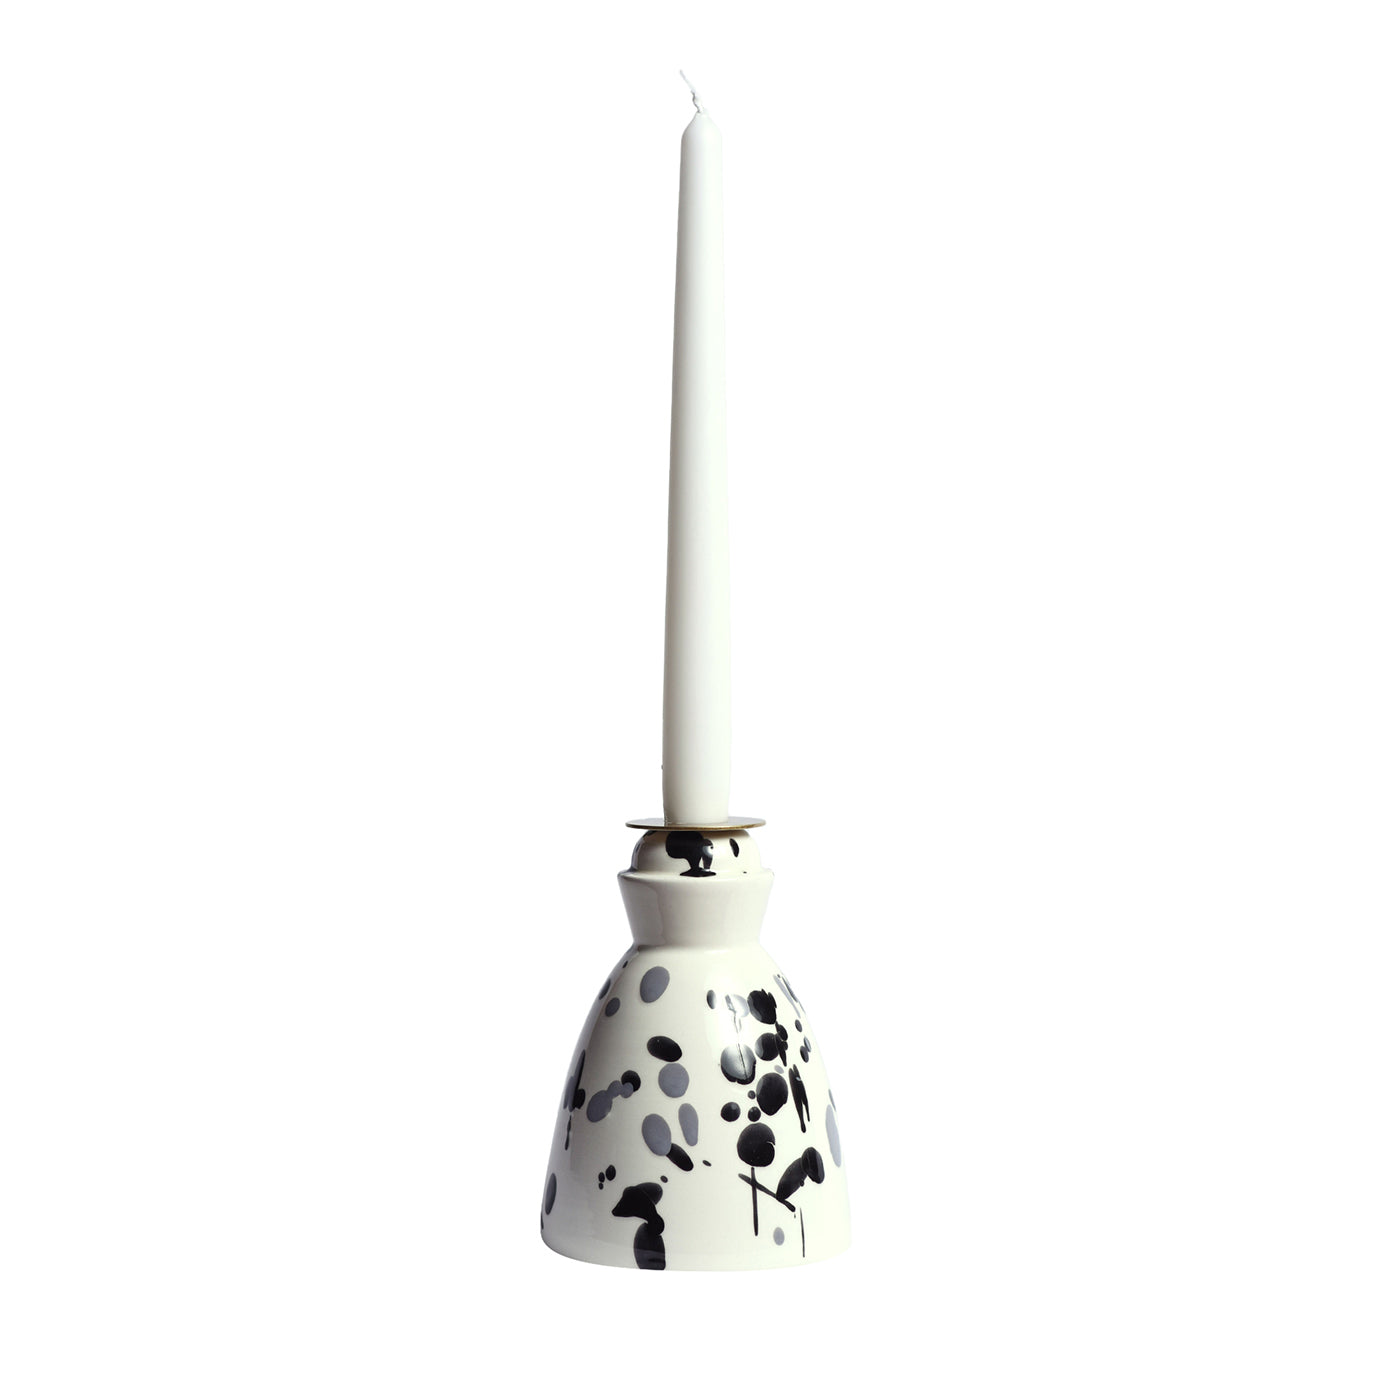 Candelabro de cerámica en blanco y negro con 4 velas perfumadas - Vista principal